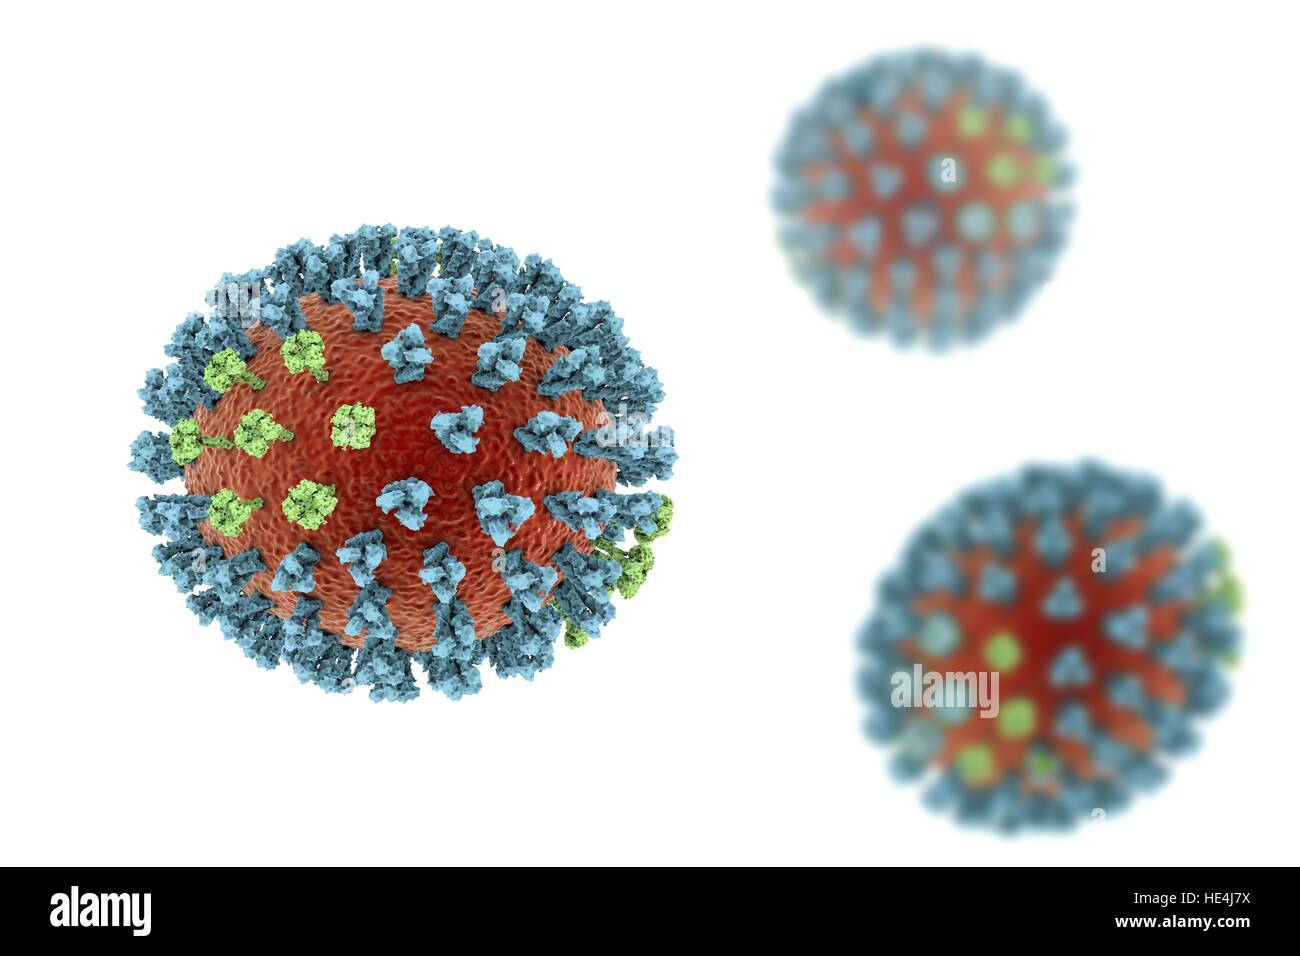 Influenza aviaria virus. 3D illustrazione di influenza aviaria H5N8 le particelle di virus. Entro il lipide virale busta (arancione) sono due tipi di proteina spike, emoagglutinina (H, blu) e neuraminidasi (N, verde), che determinano il ceppo di virus. Questo ceppo del virus che ha causato la malattia negli uccelli selvatici e pollame in Europa e in Asia a partire dal giugno 2016. Inusitatamente, il virus causa la mortalità negli uccelli selvatici che sono più spesso silenziosa vettori. A partire dal mese di dicembre 2016 nessun essere umano di casi della malattia sono stati segnalati e rischio di trasmissione agli esseri umani è pensato per essere bassa. Foto Stock